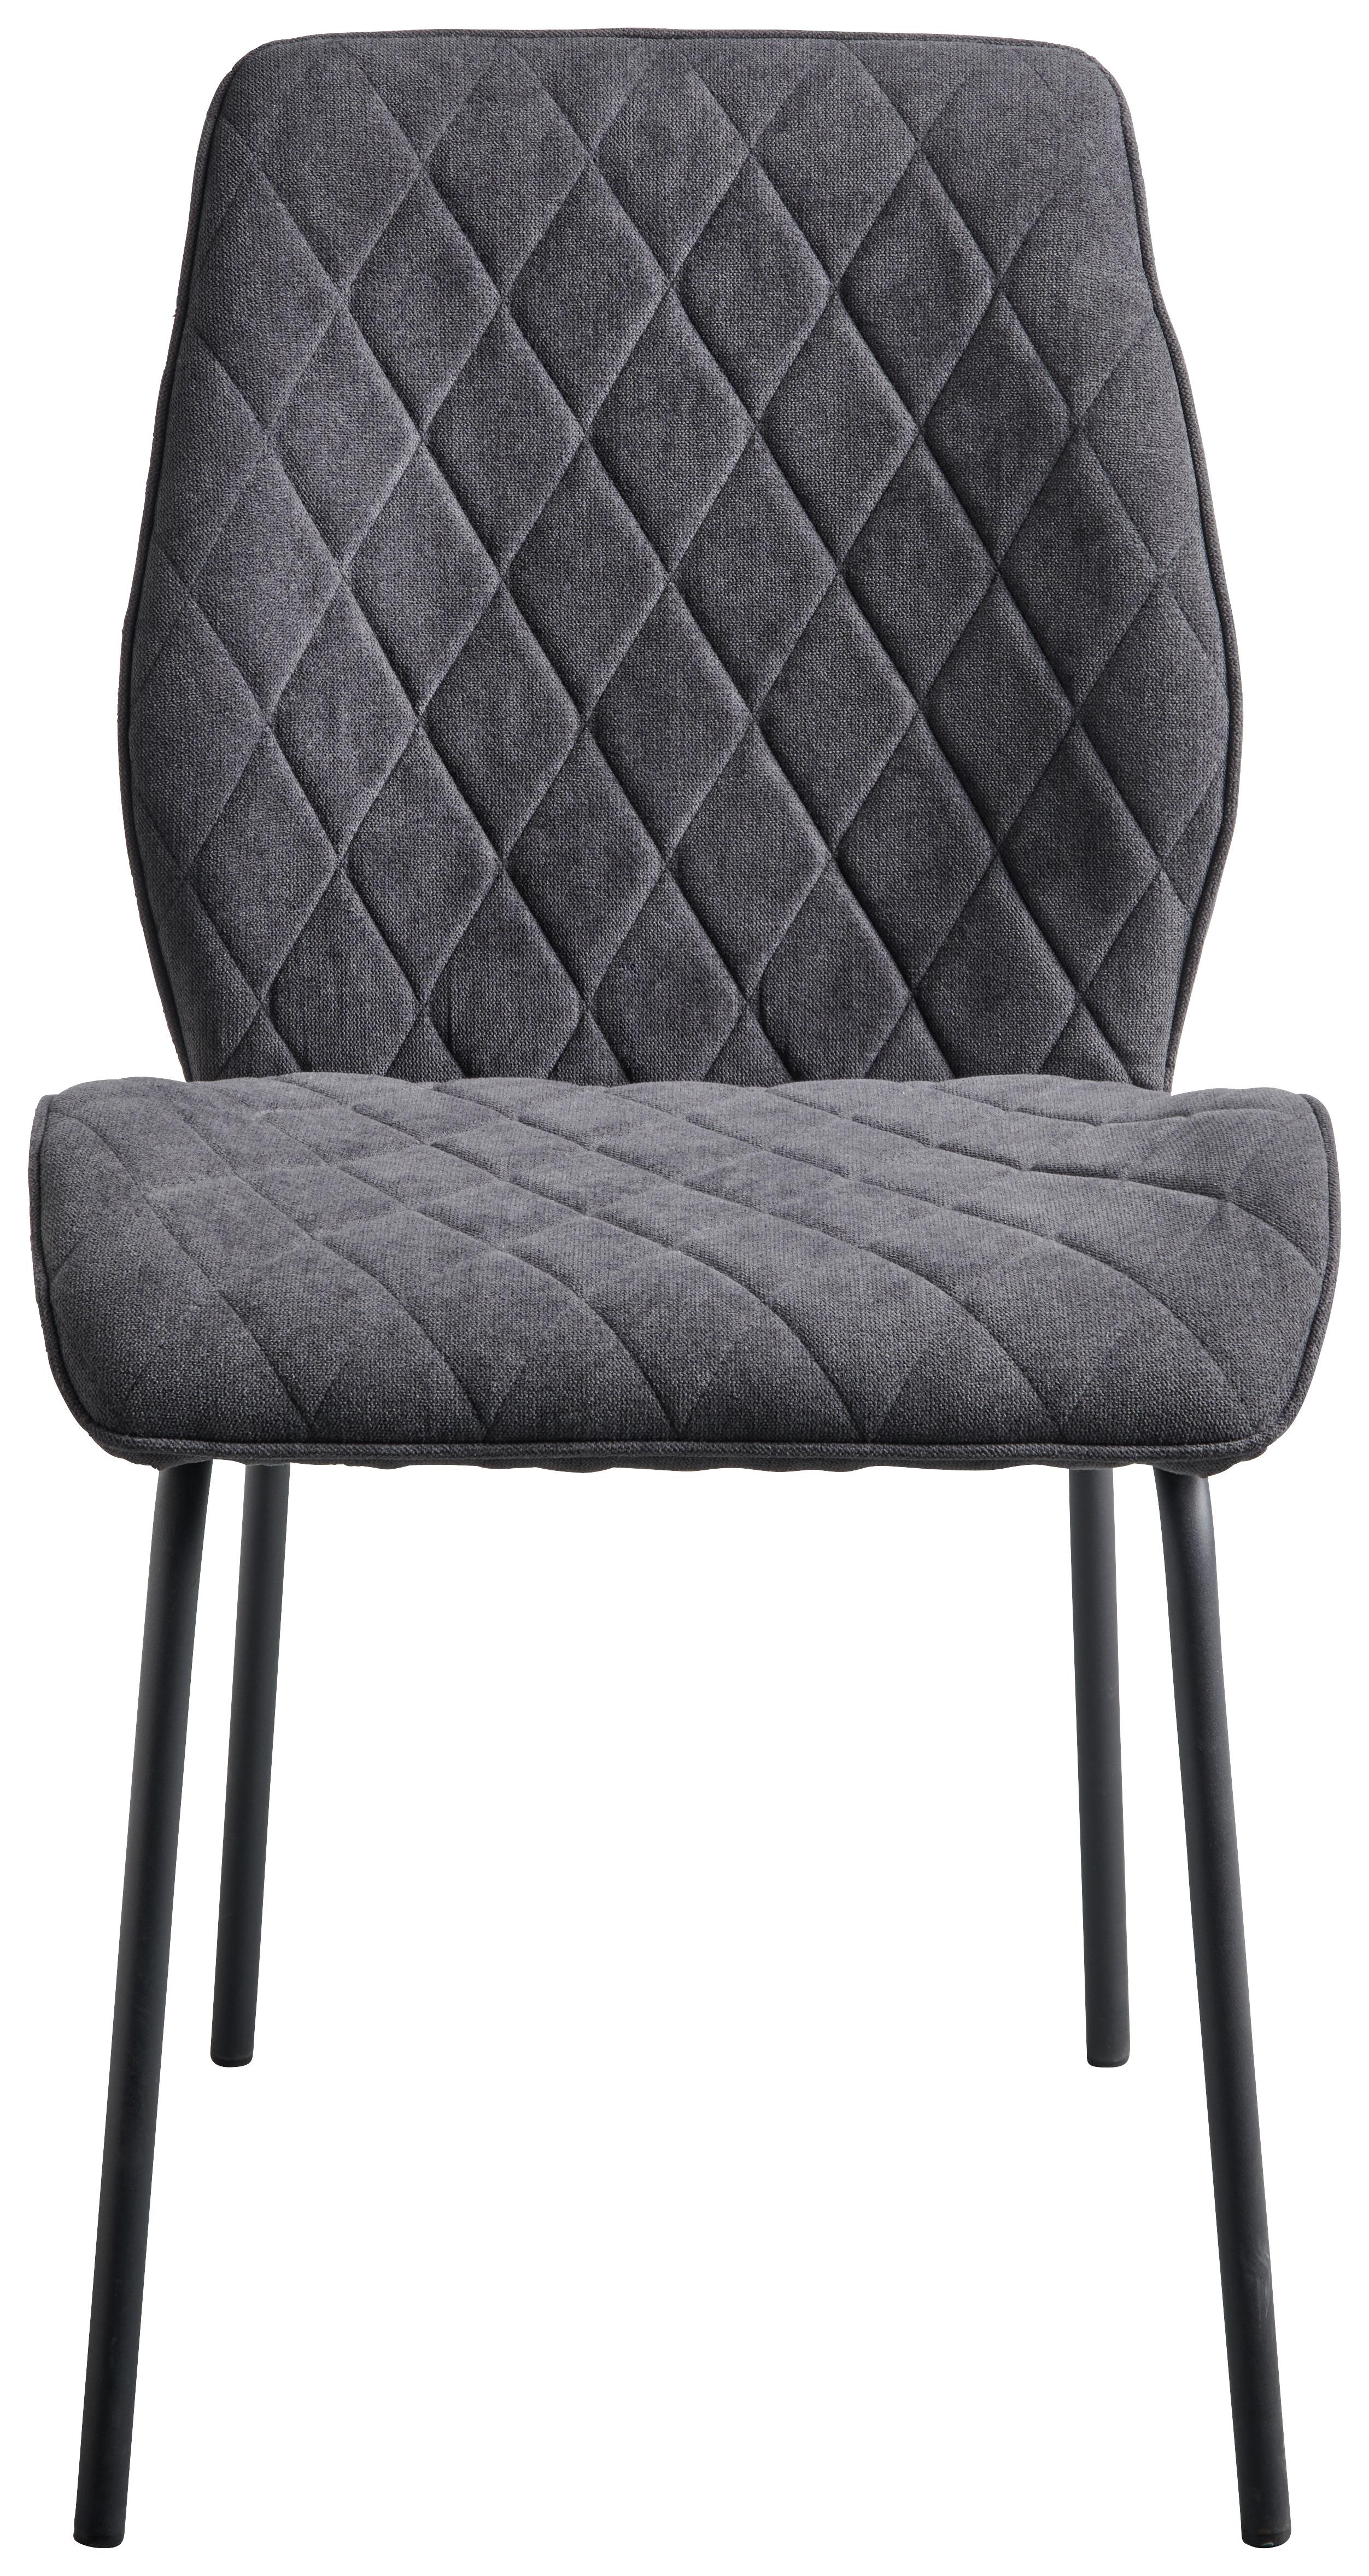 Čtyřnohá Židle Hilde - černá/tmavě šedá, Konvenční, kov/dřevo (51/87/61cm)